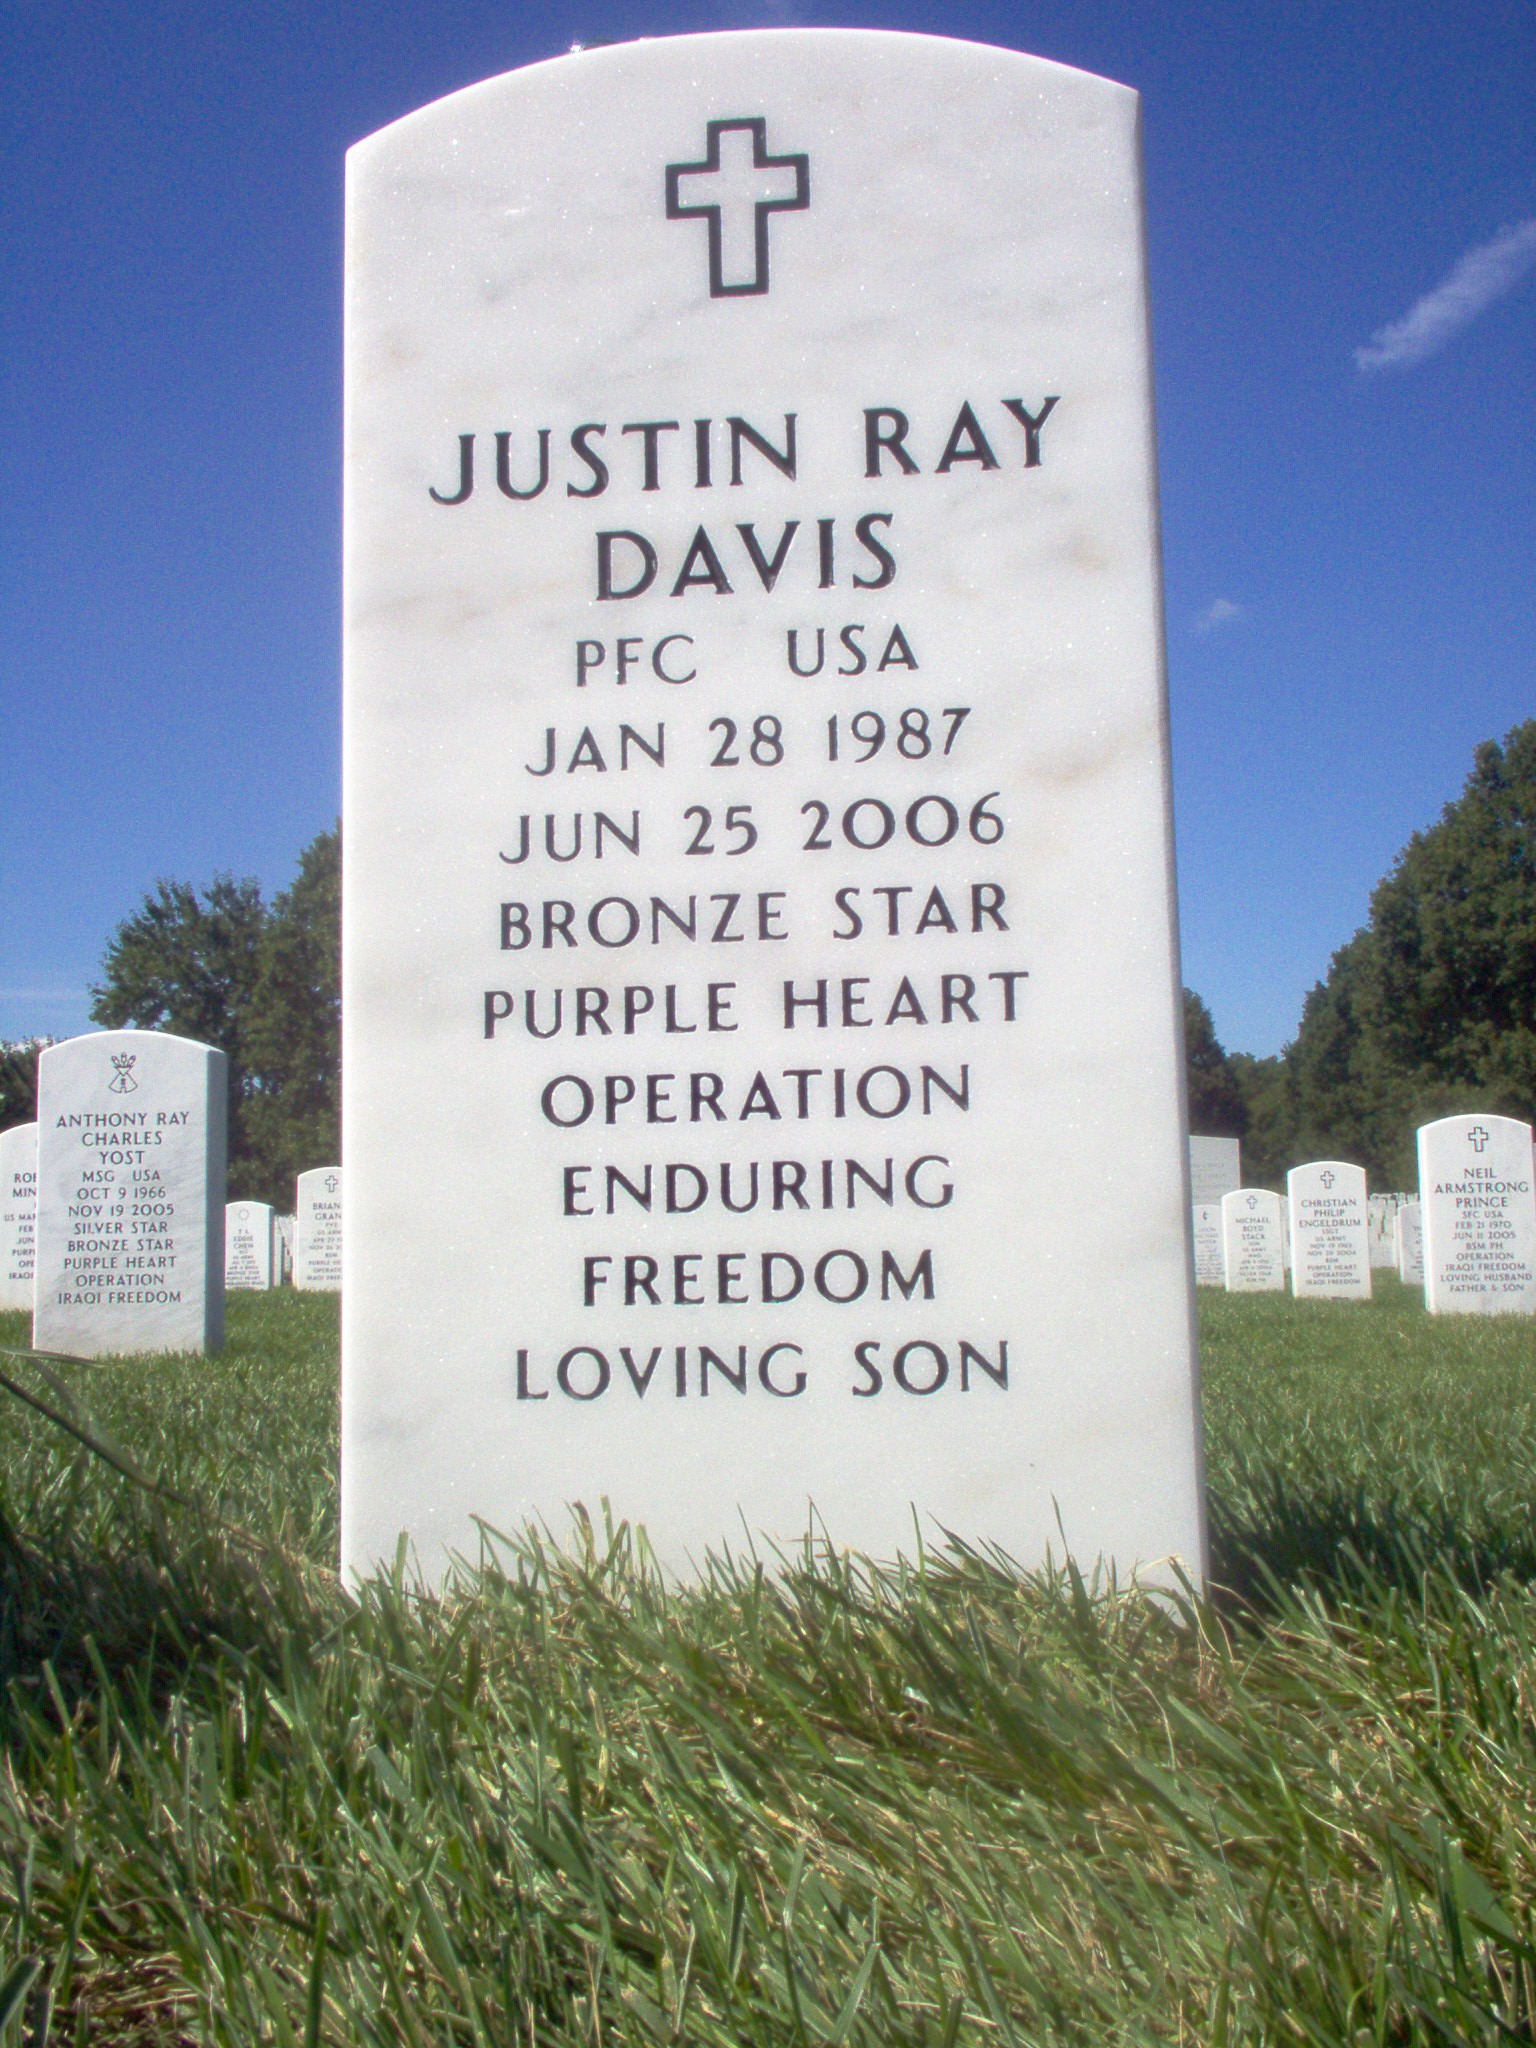 jrdavis-gravesite-photo-september-2006-003